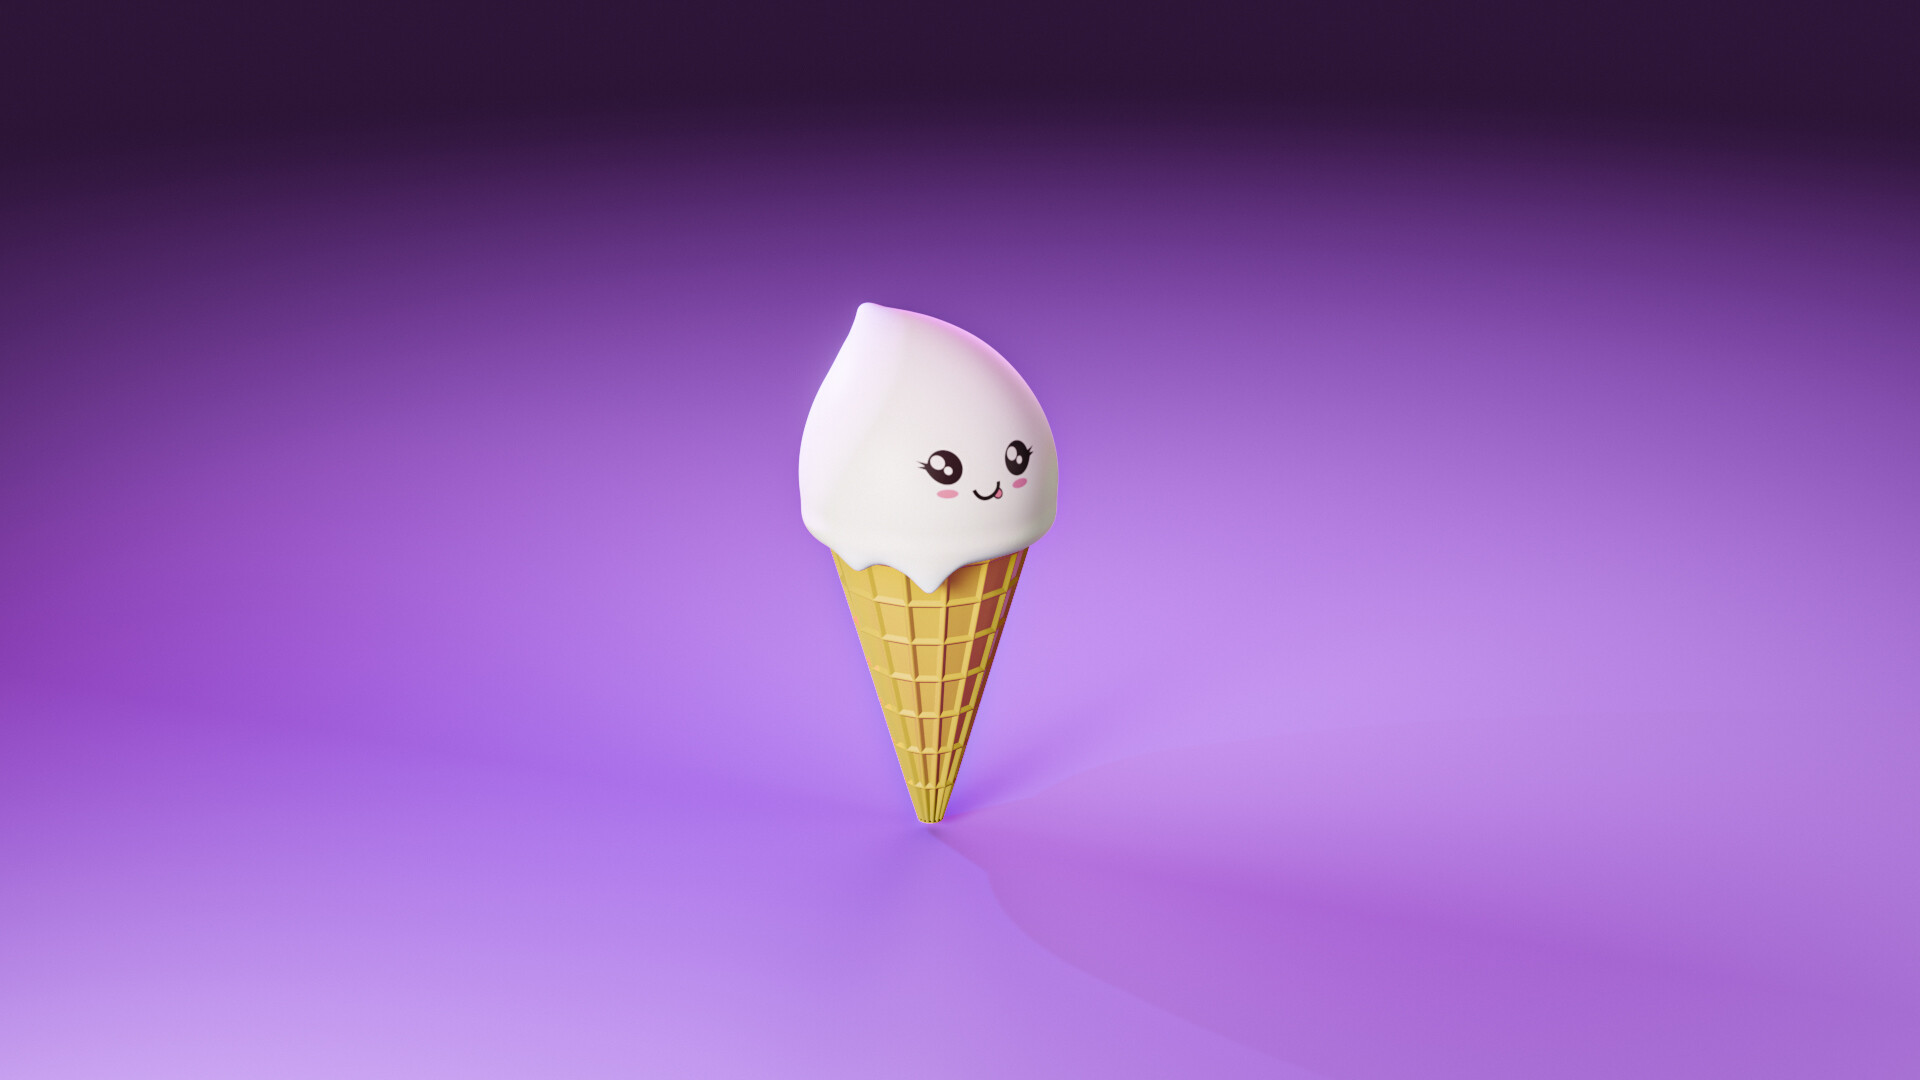 ArtStation - Cute ice cream / Eevee Render